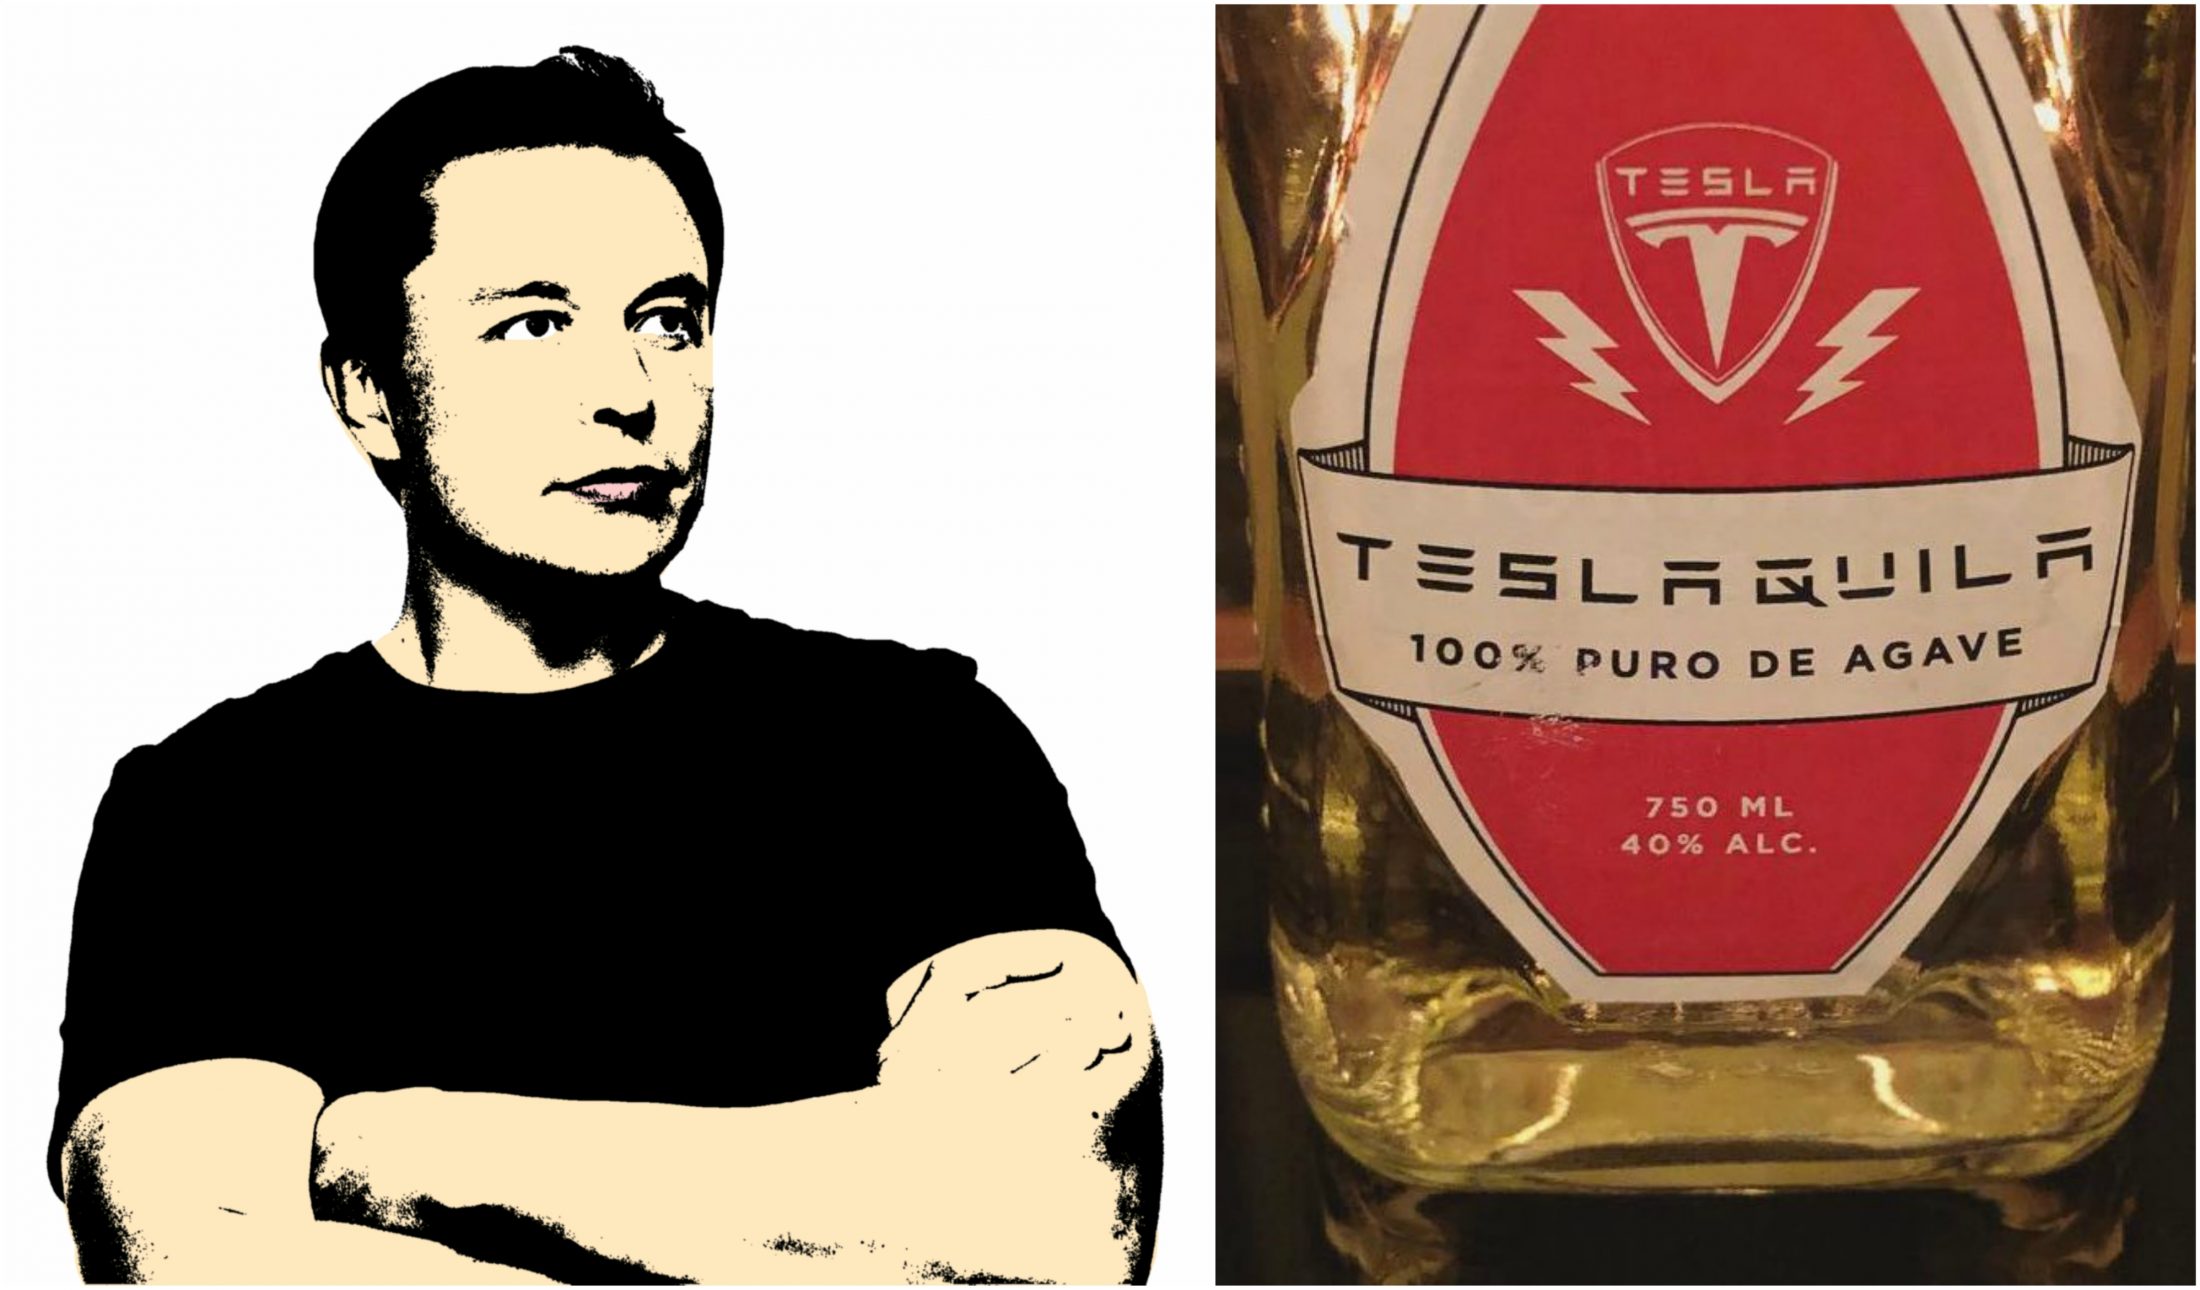 Trollolo: Elon Musk áprilisi tréfája, a Teslaquila már a szavadalmi hivatalban!